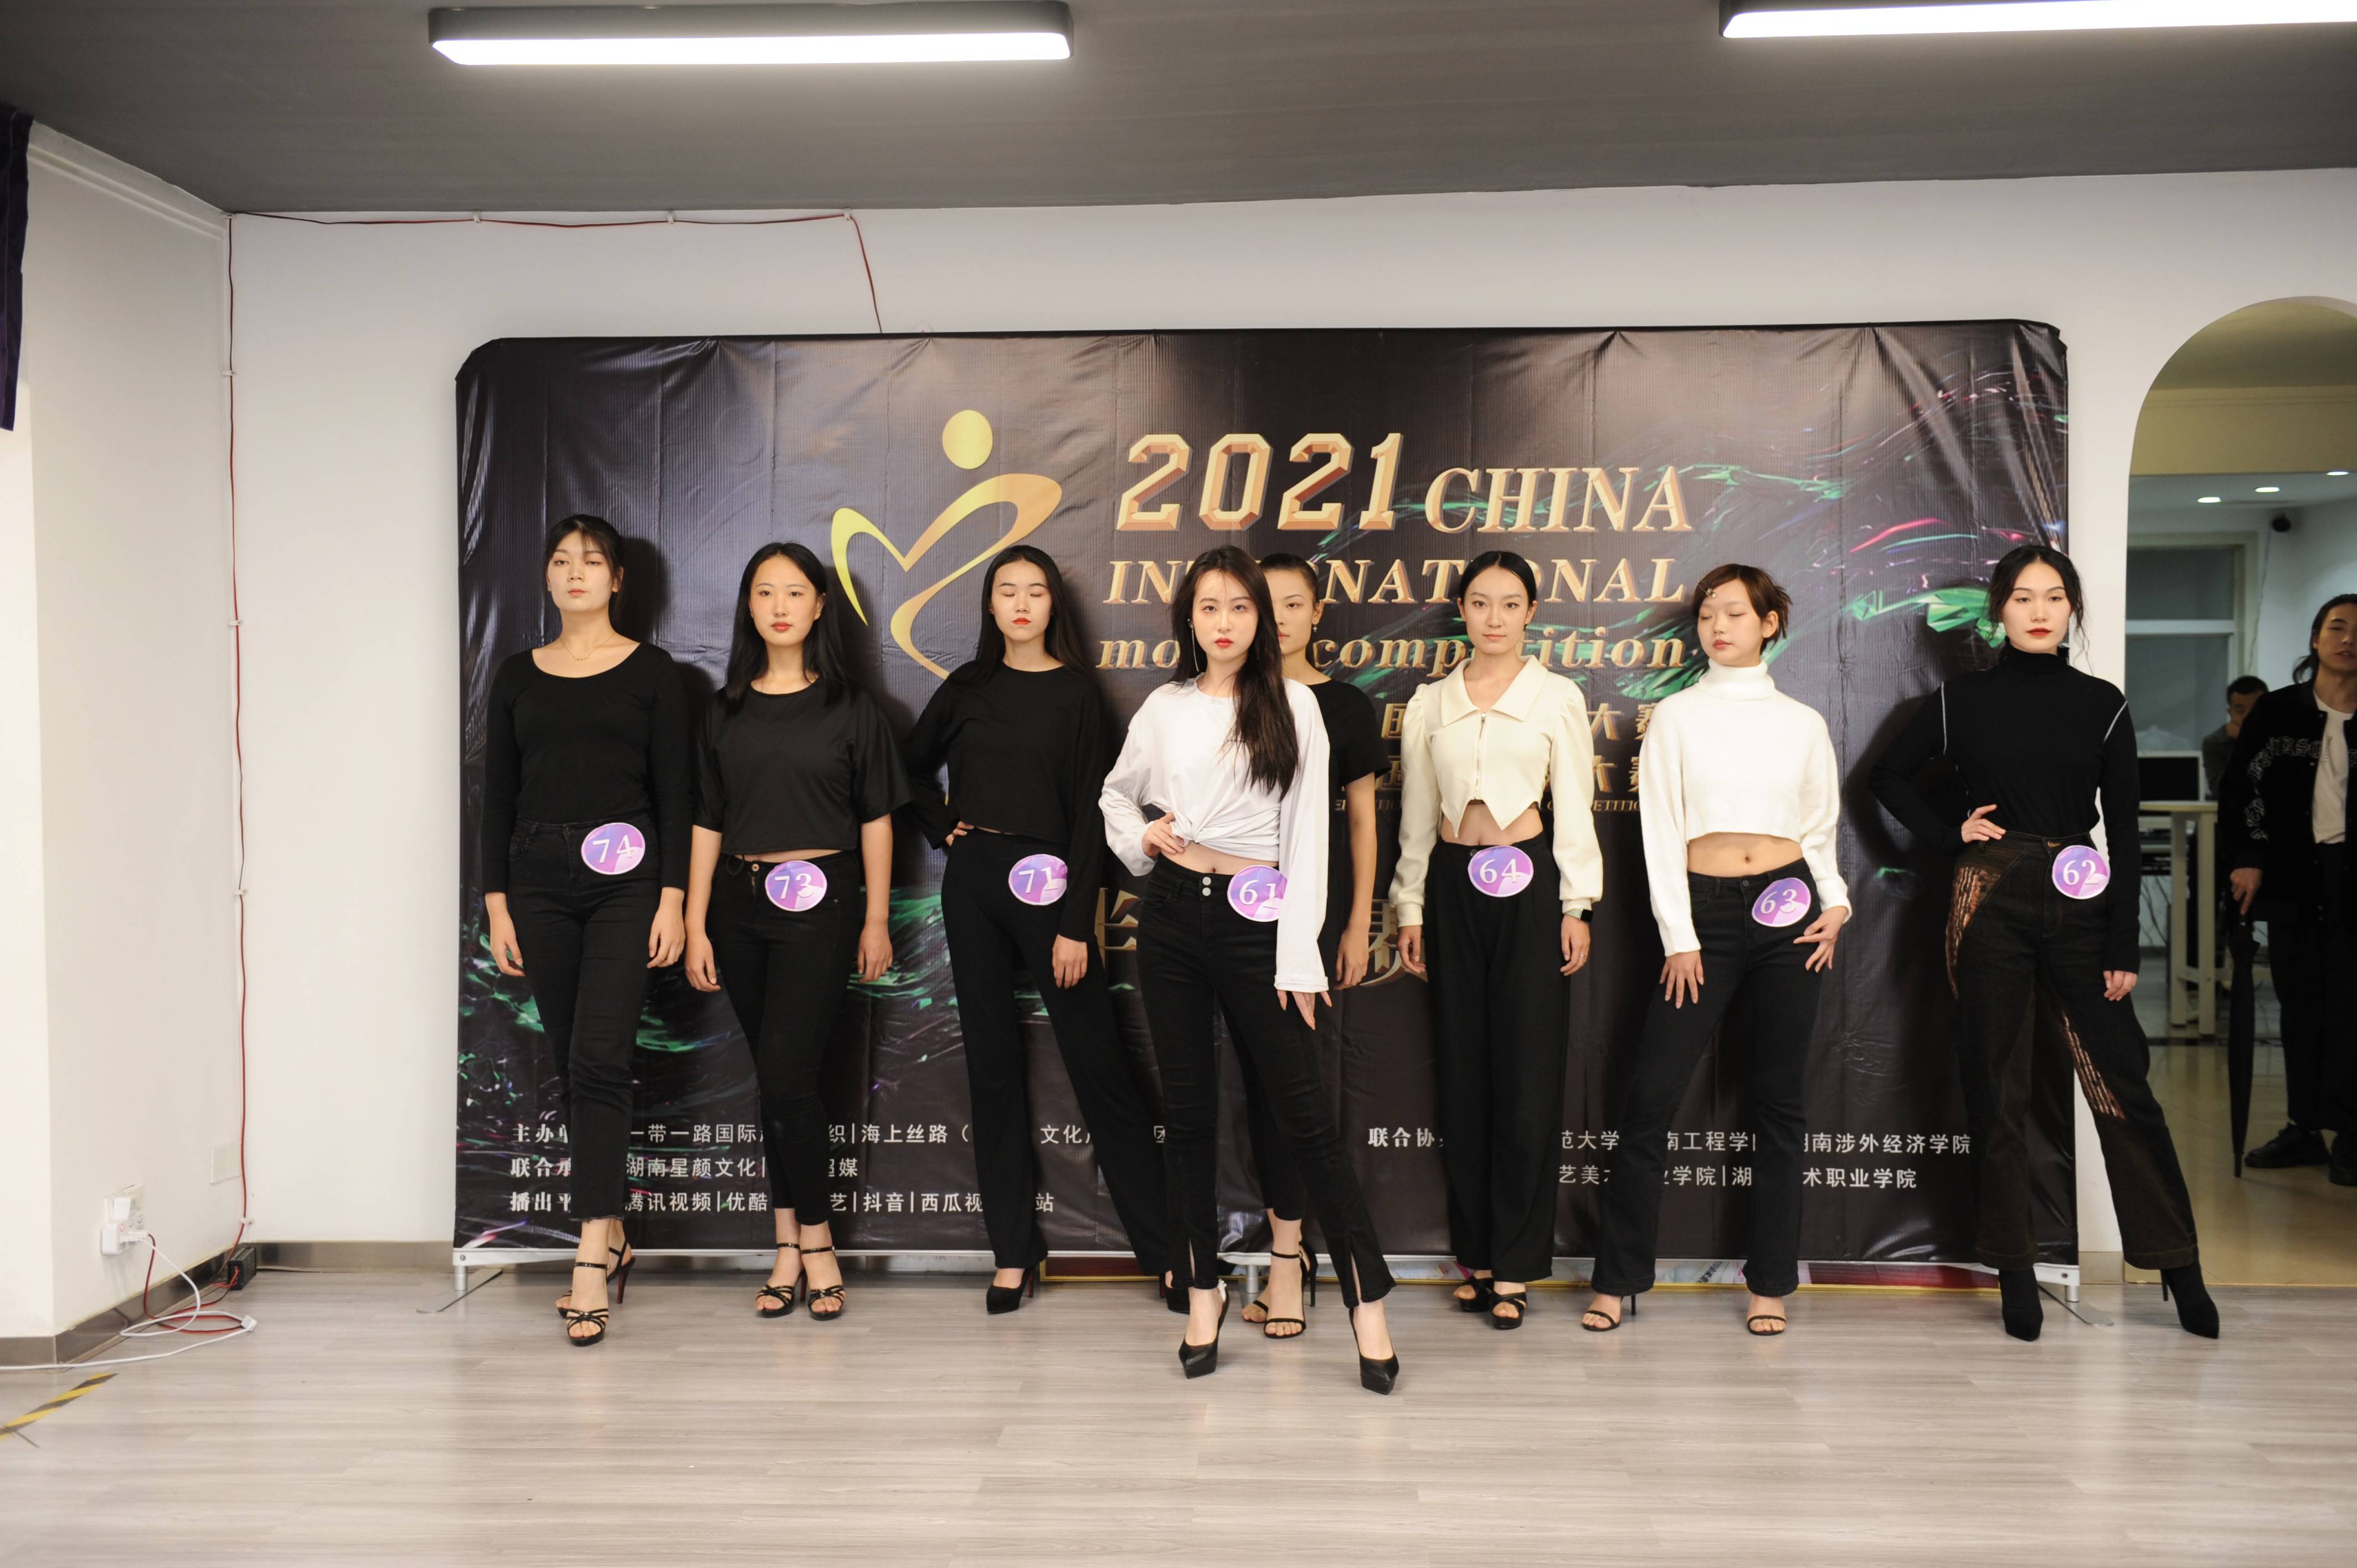 2021中国(广州)国际模特大赛暨bamp;r国际超模大赛湖南赛区决赛